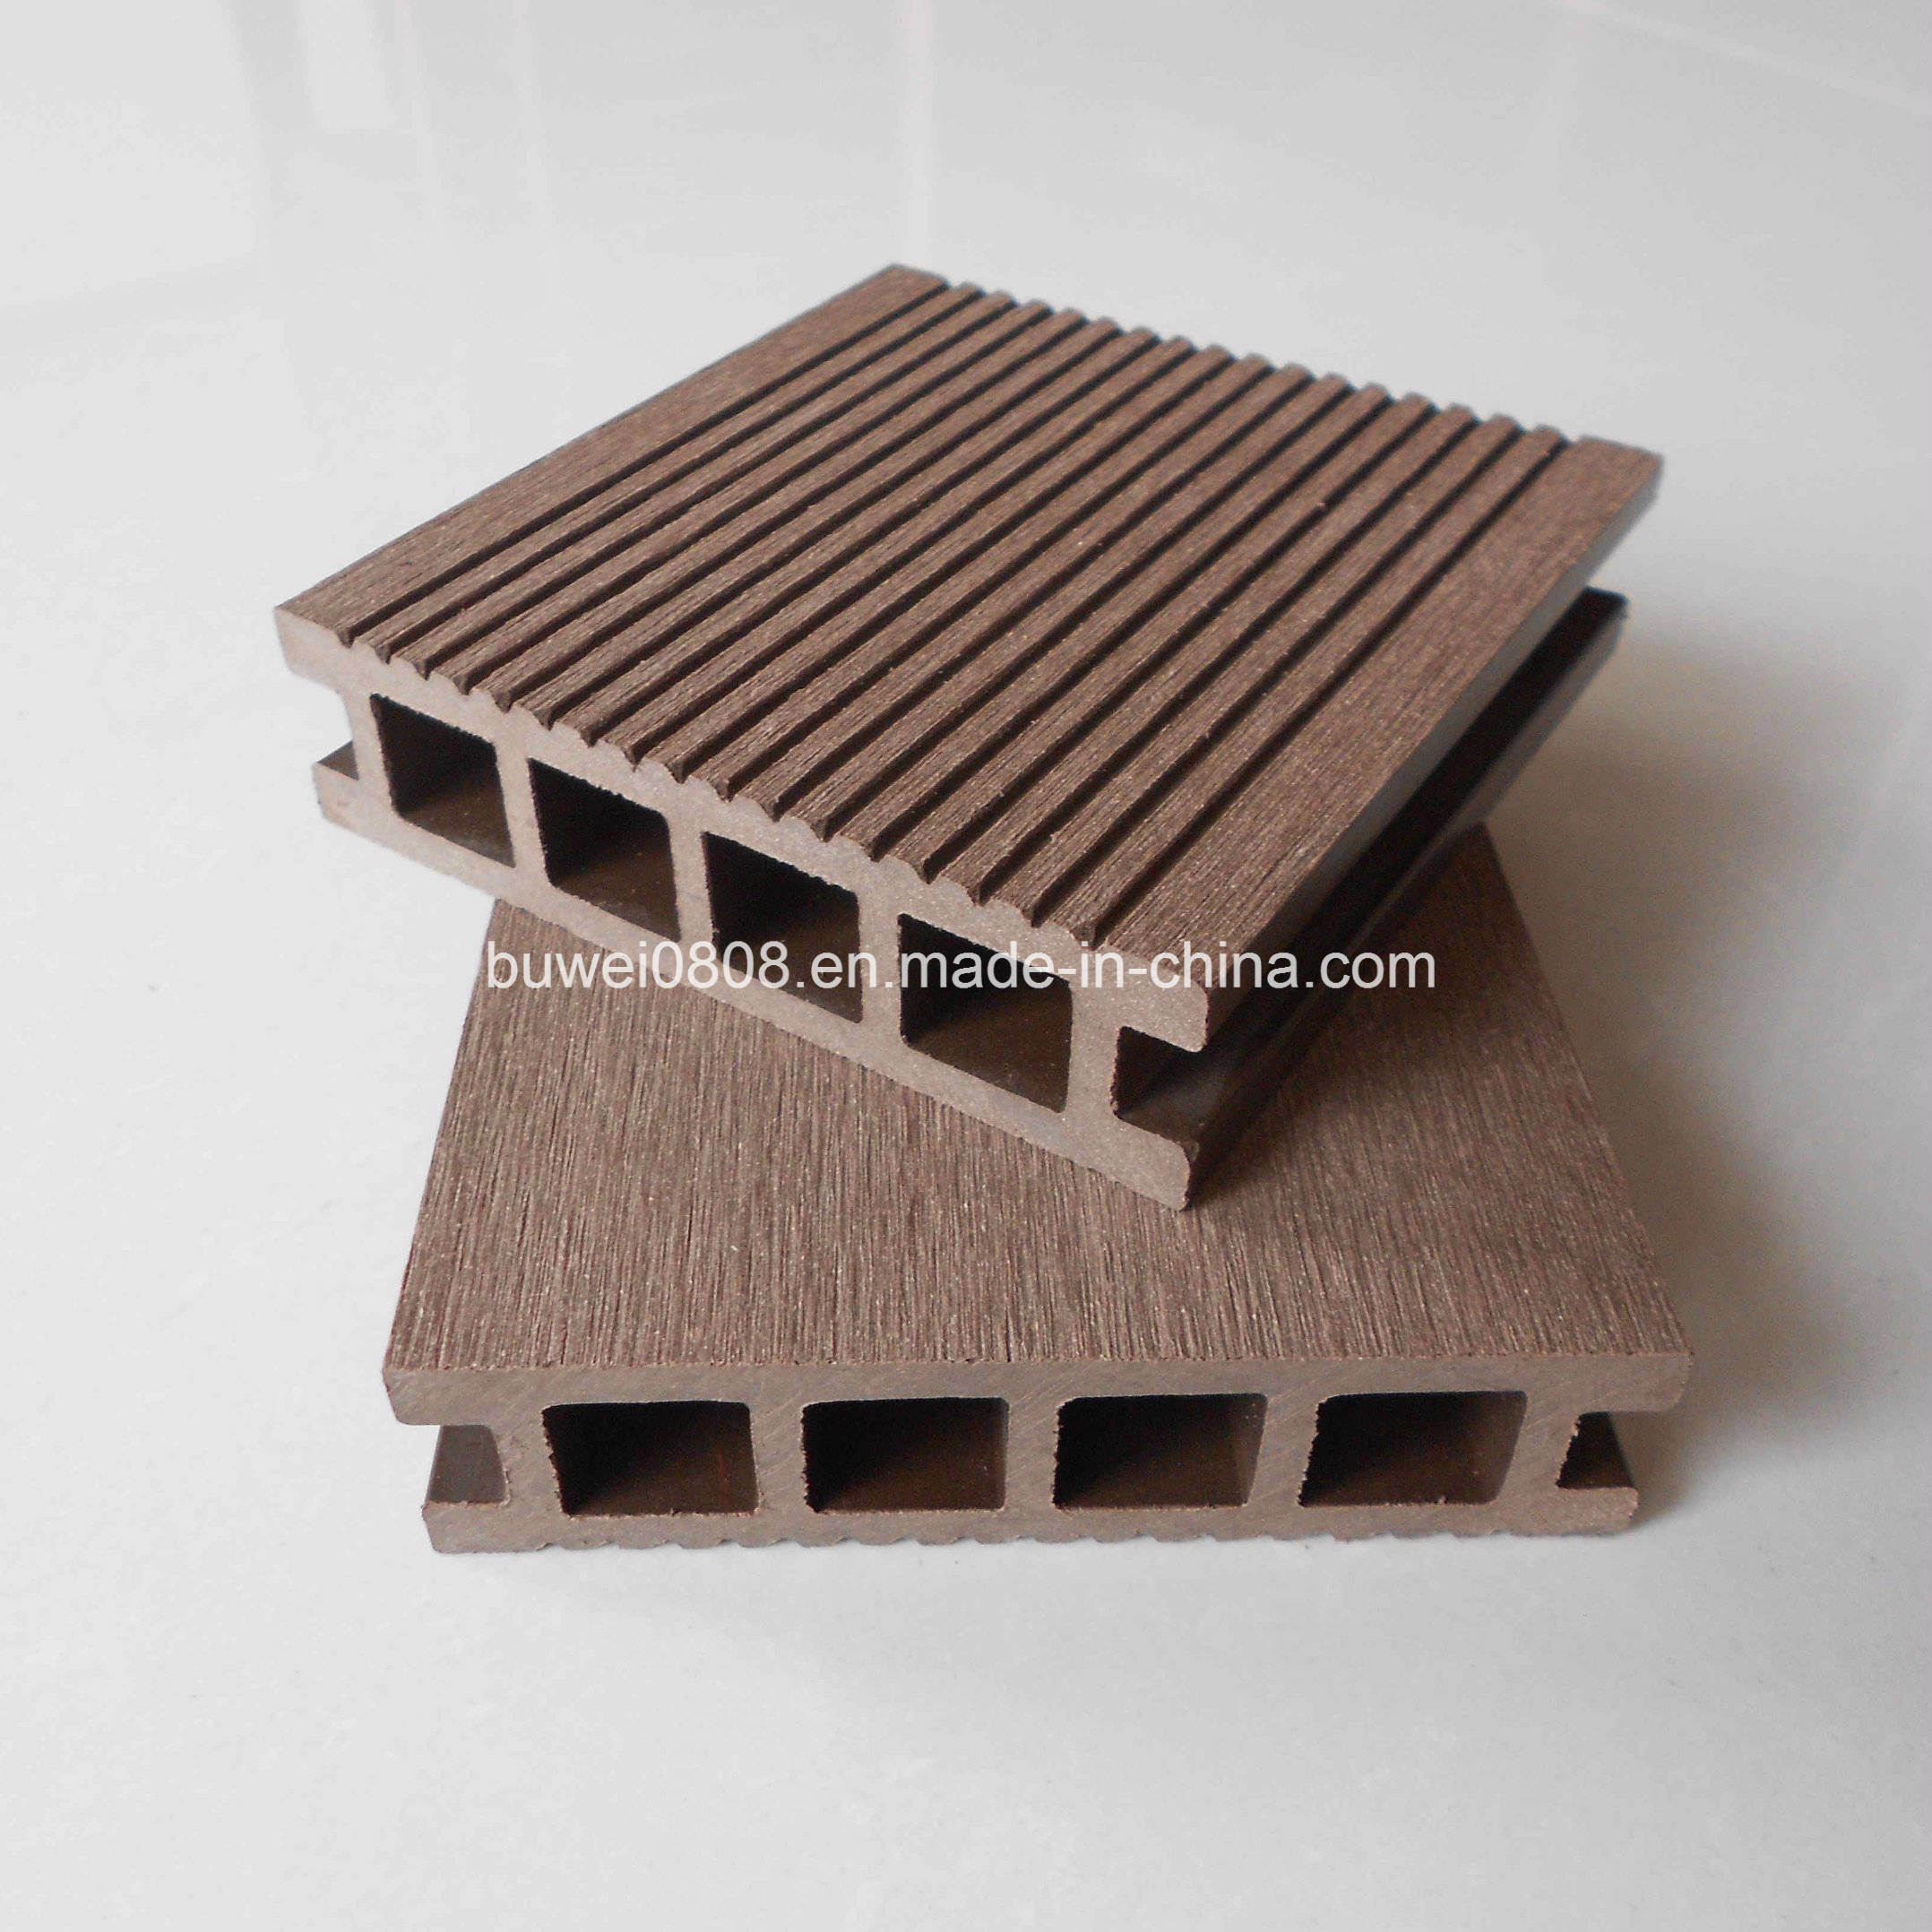 New Design Wood Plastic Composite Deck Flooring